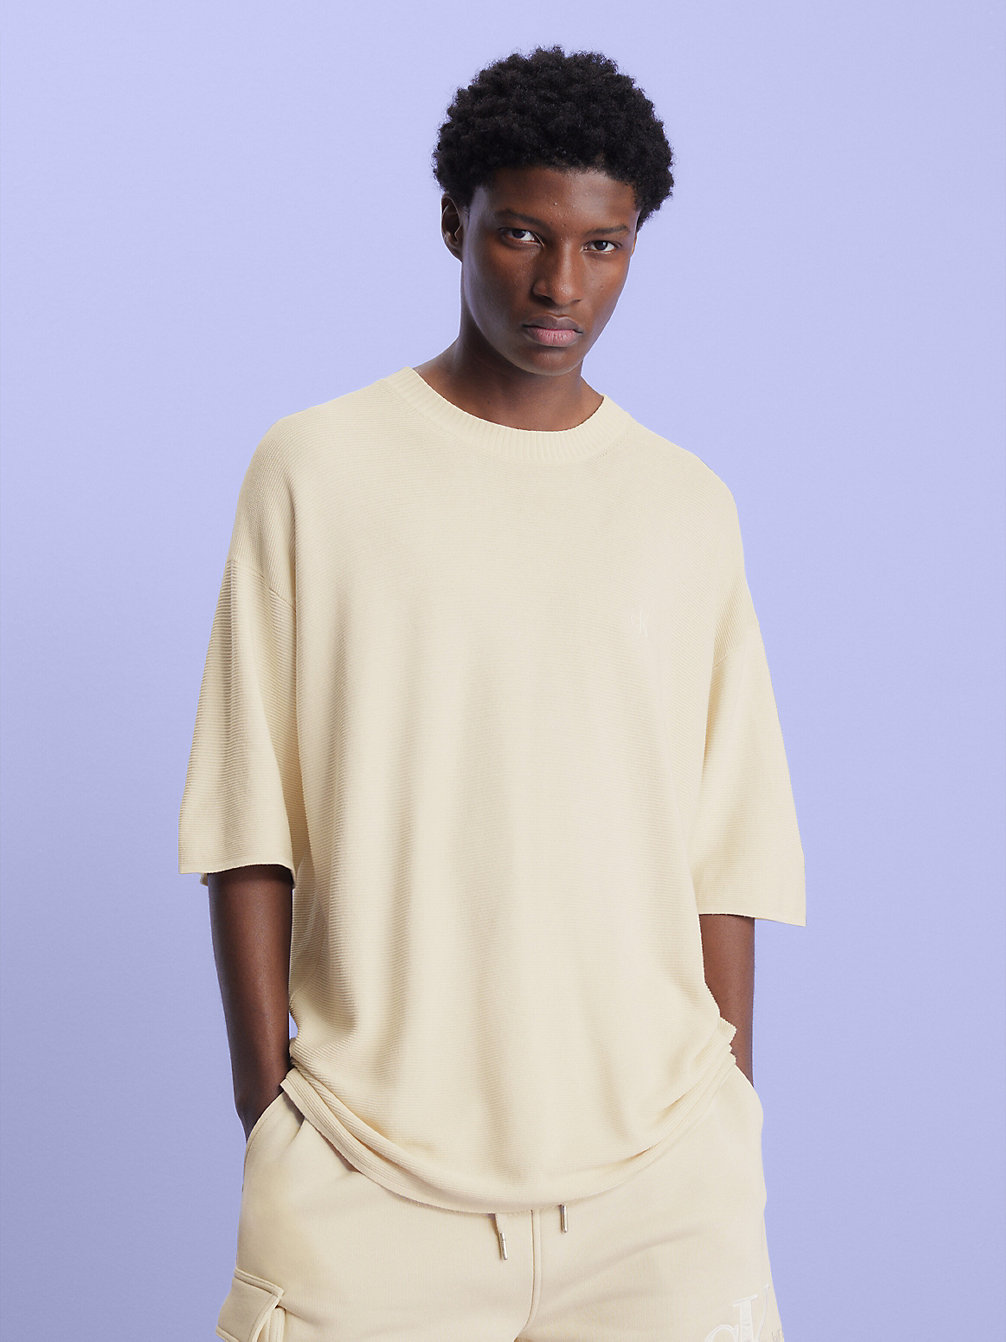 MUSLIN > Swobodny Sweter Z Krótkim Rękawem > undefined Mężczyźni - Calvin Klein